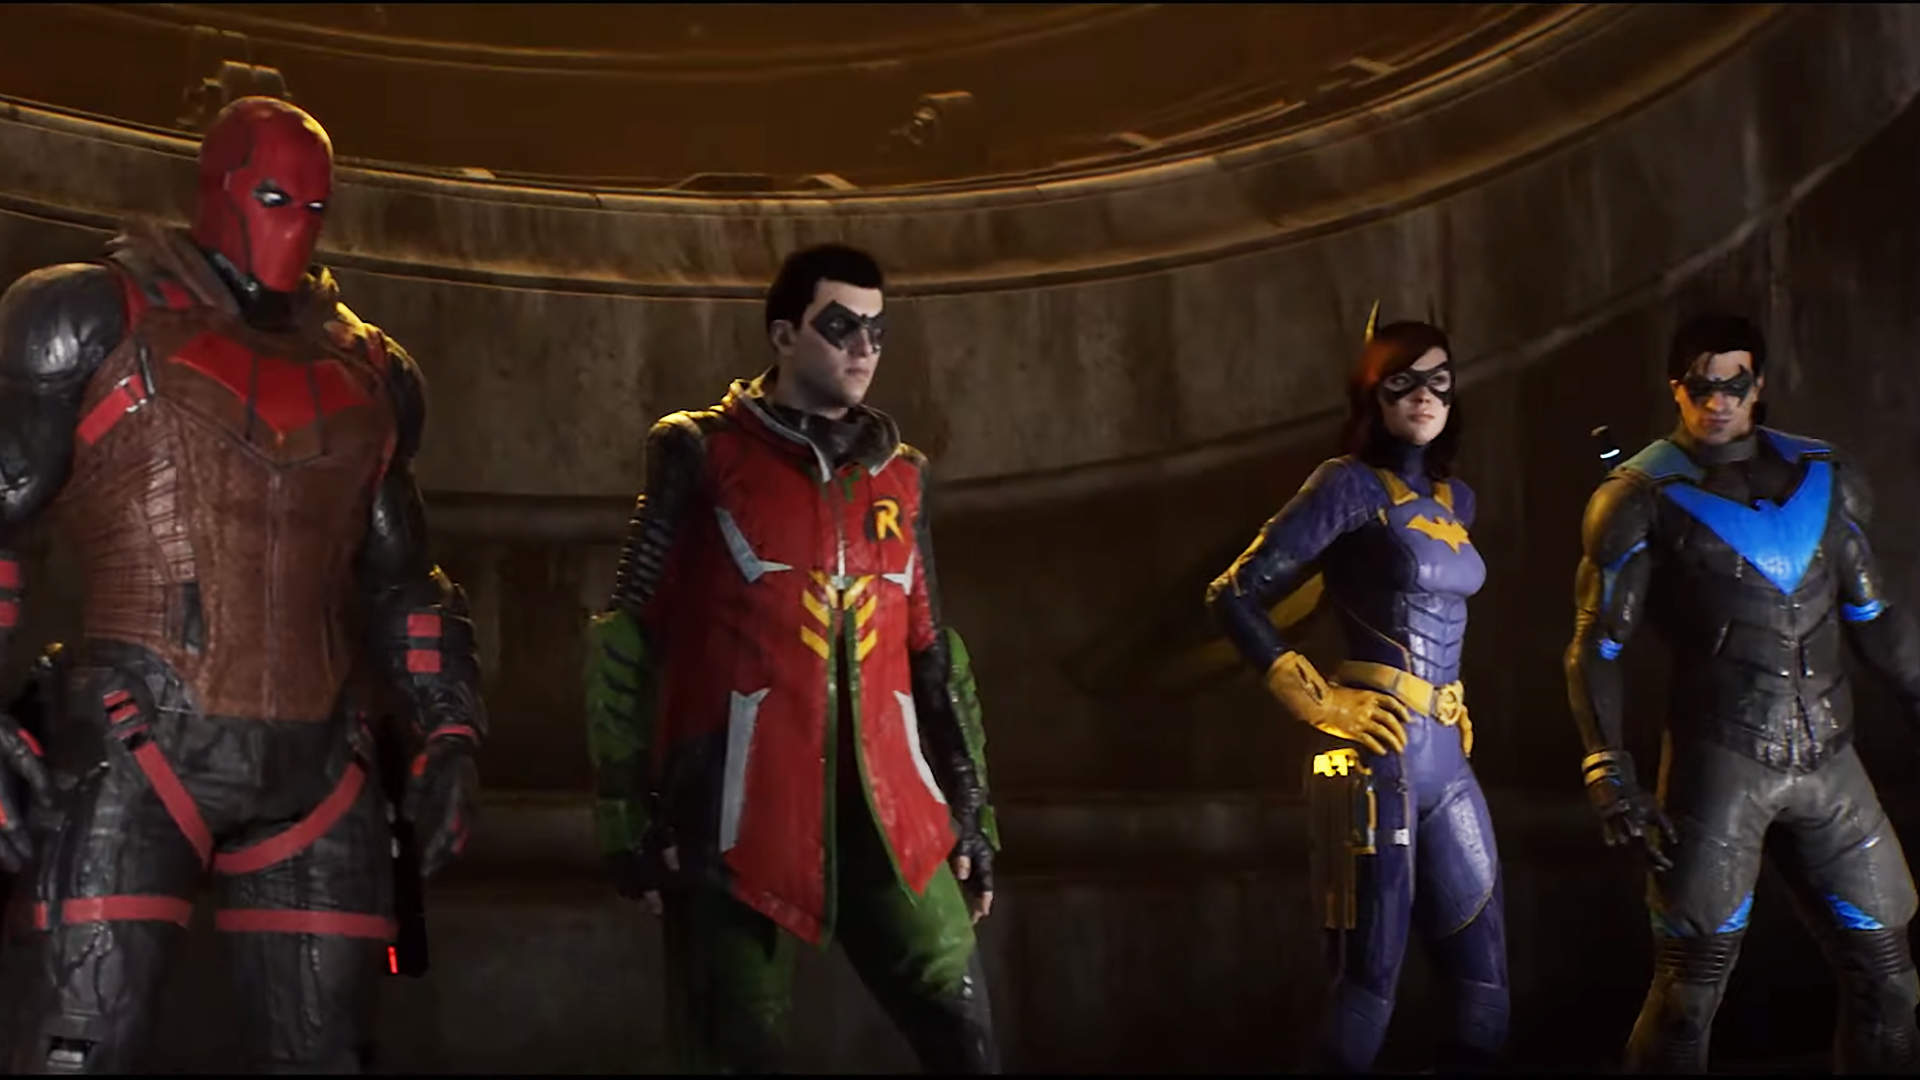 Gotham Knights presentó sus elevados requisitos para PC de cara al  lanzamiento del juego - Cultura Geek